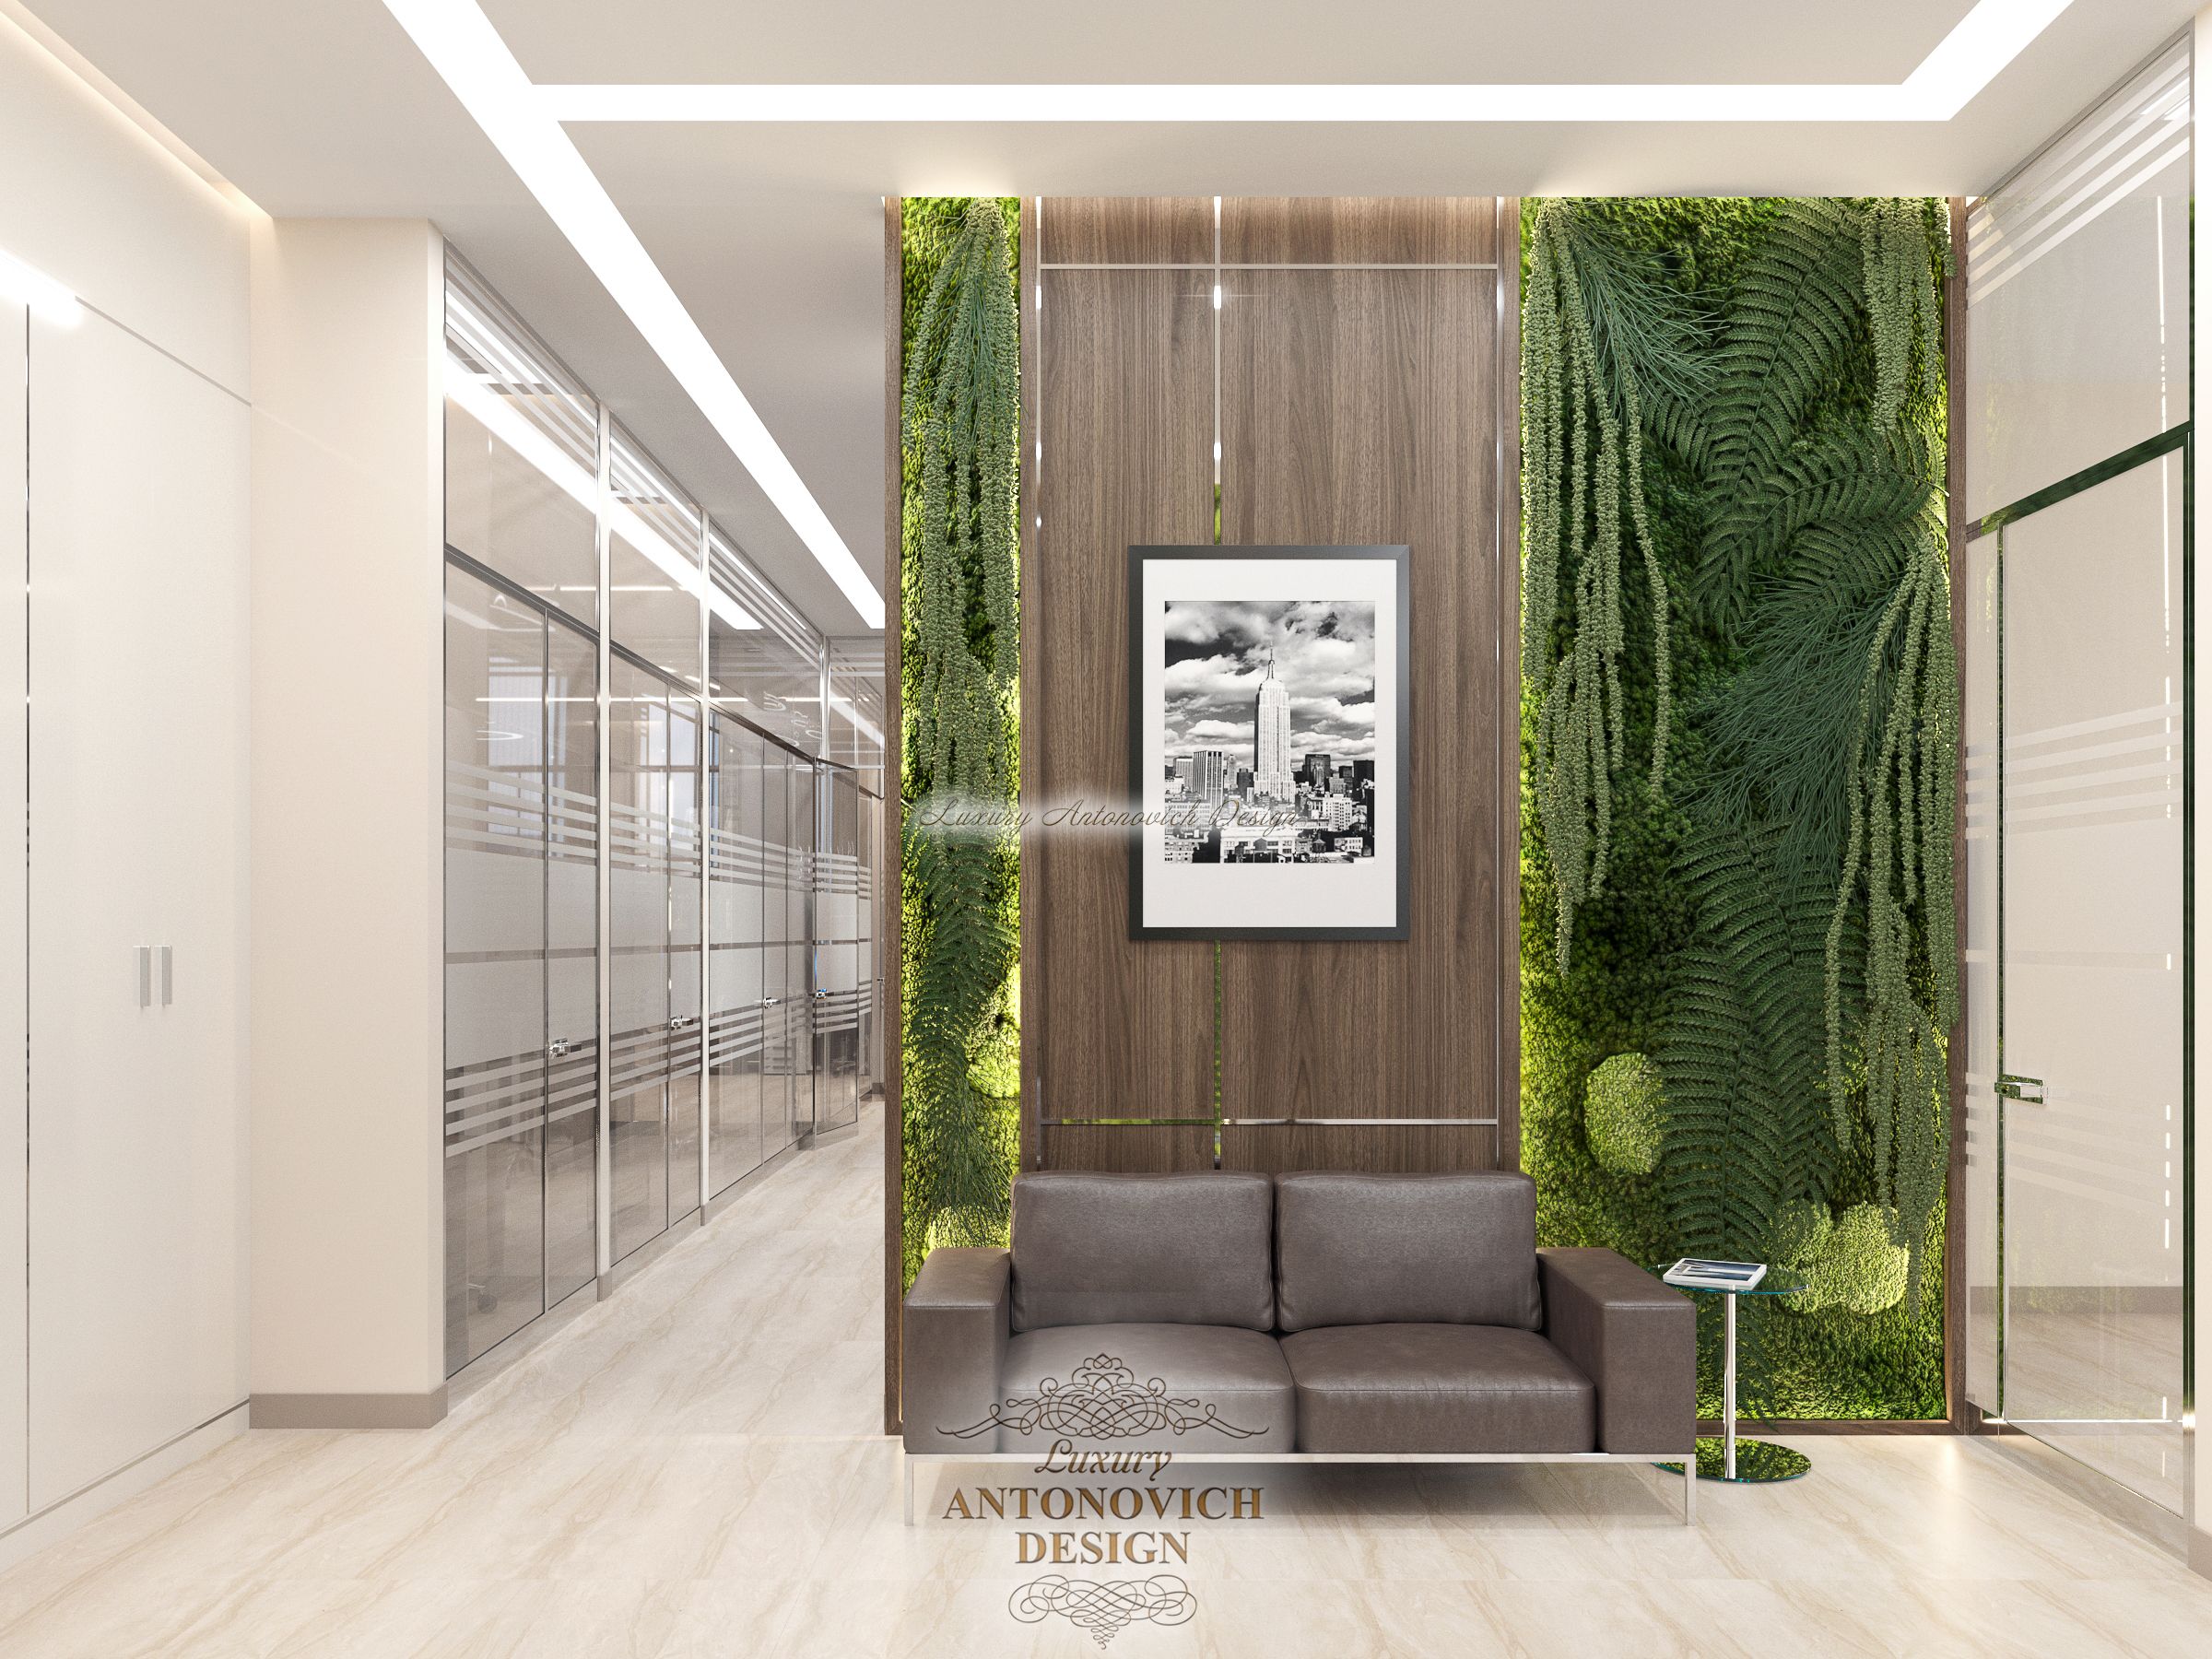 Дизайн интерьера Помещения 4 в офисе, Студия Luxury Antonovich Design